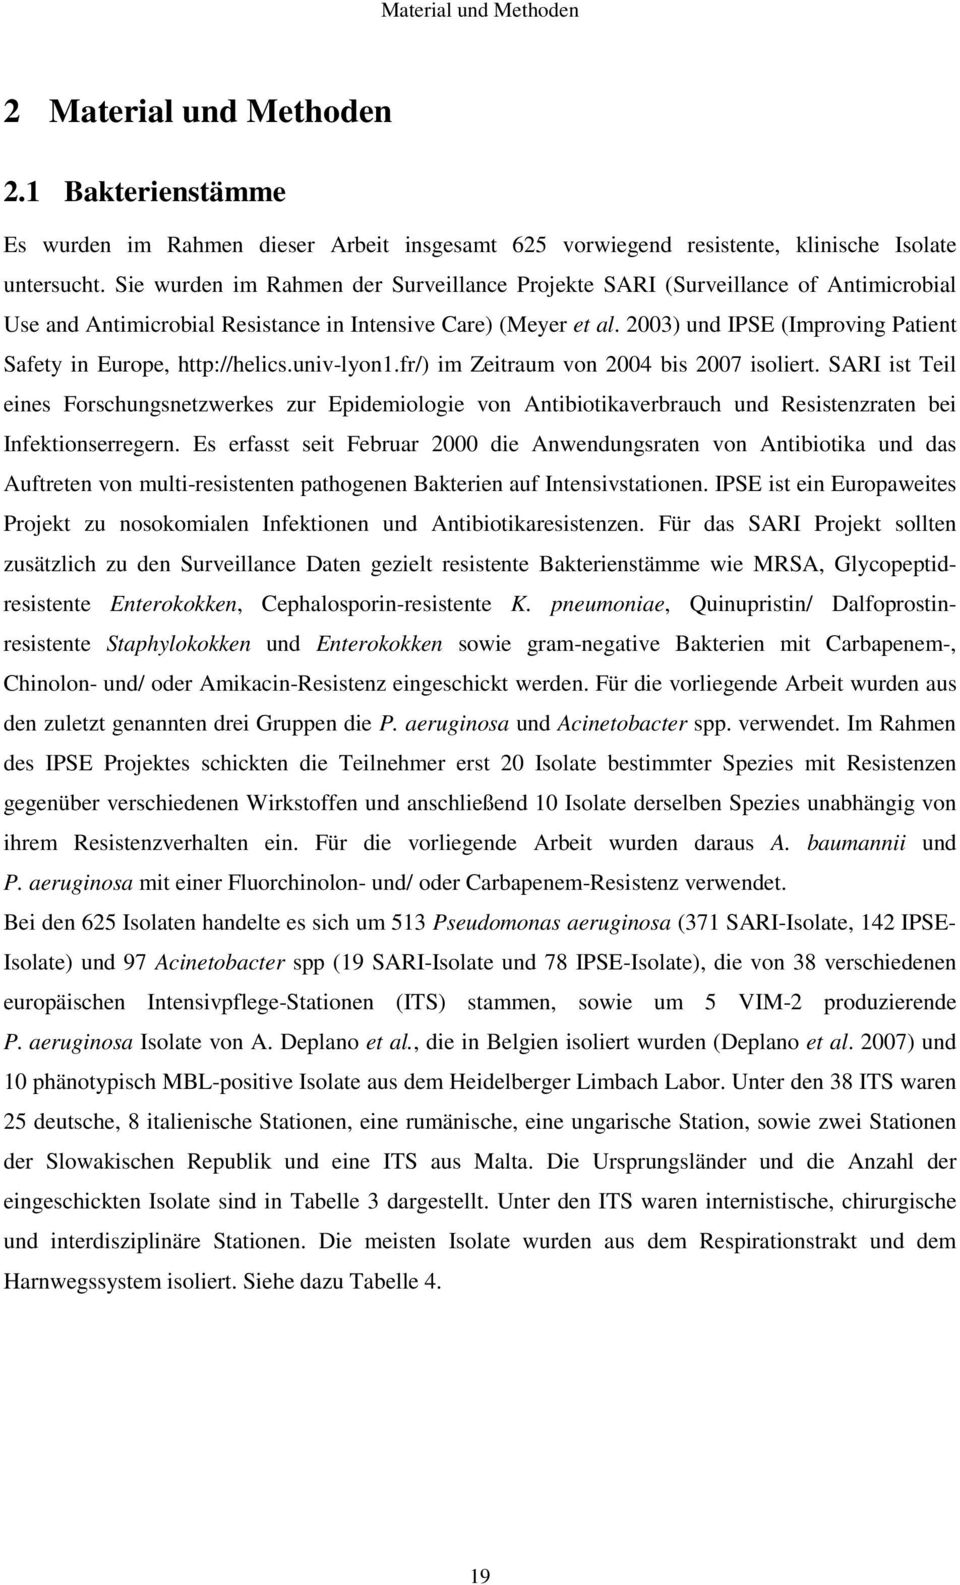 2003) und IPSE (Improving Patient Safety in Europe, http://helics.univ-lyon1.fr/) im Zeitraum von 2004 bis 2007 isoliert.